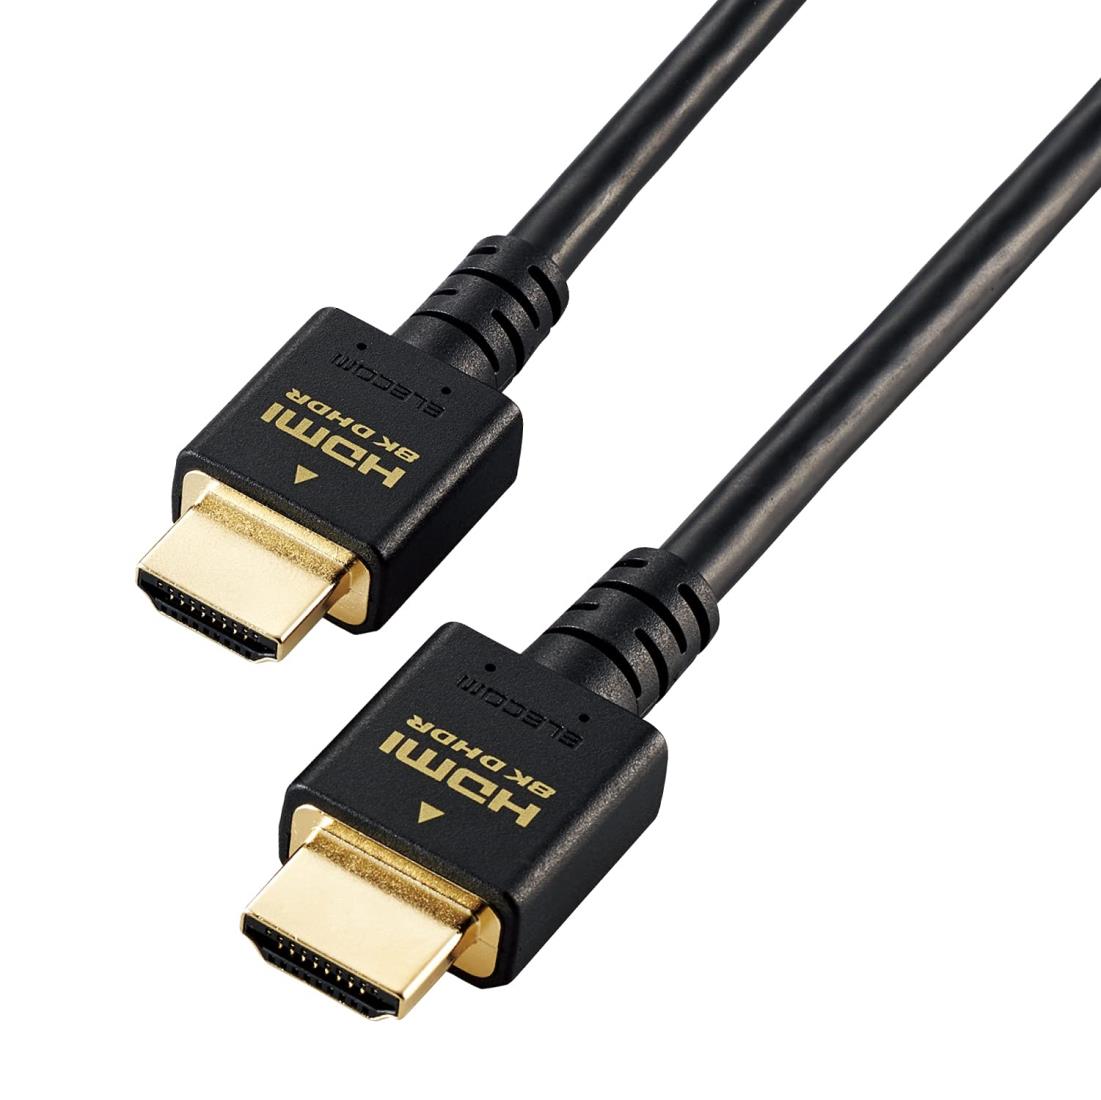 エレコム HDMI 2.1 ケーブル ウルトラハイスピード 1.5m 【Ultra High Speed HDMI Cable認証品】 8K(60Hz) 4K(120Hz) 48Gbps 超高速 【 PS5 / PS4 Nintendo Switch 対応】 7680×4320 eARC VRR 黒 ブラック GM-DHHD21E15BK